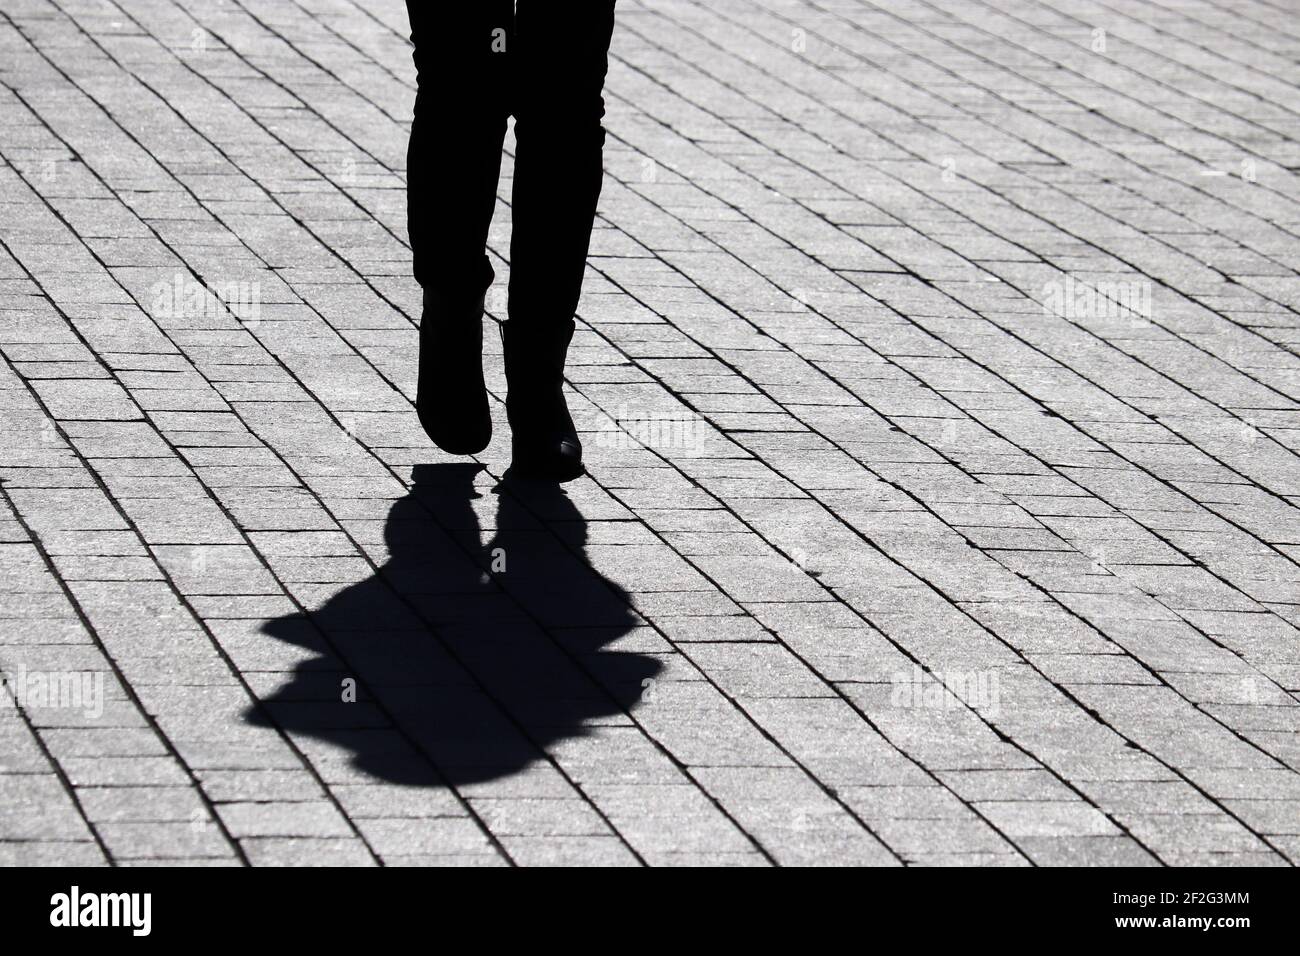 Silhouette noire et ombre d'une femme solitaire marchant dans une rue. Concept de solitude, vie humaine dramatique Banque D'Images